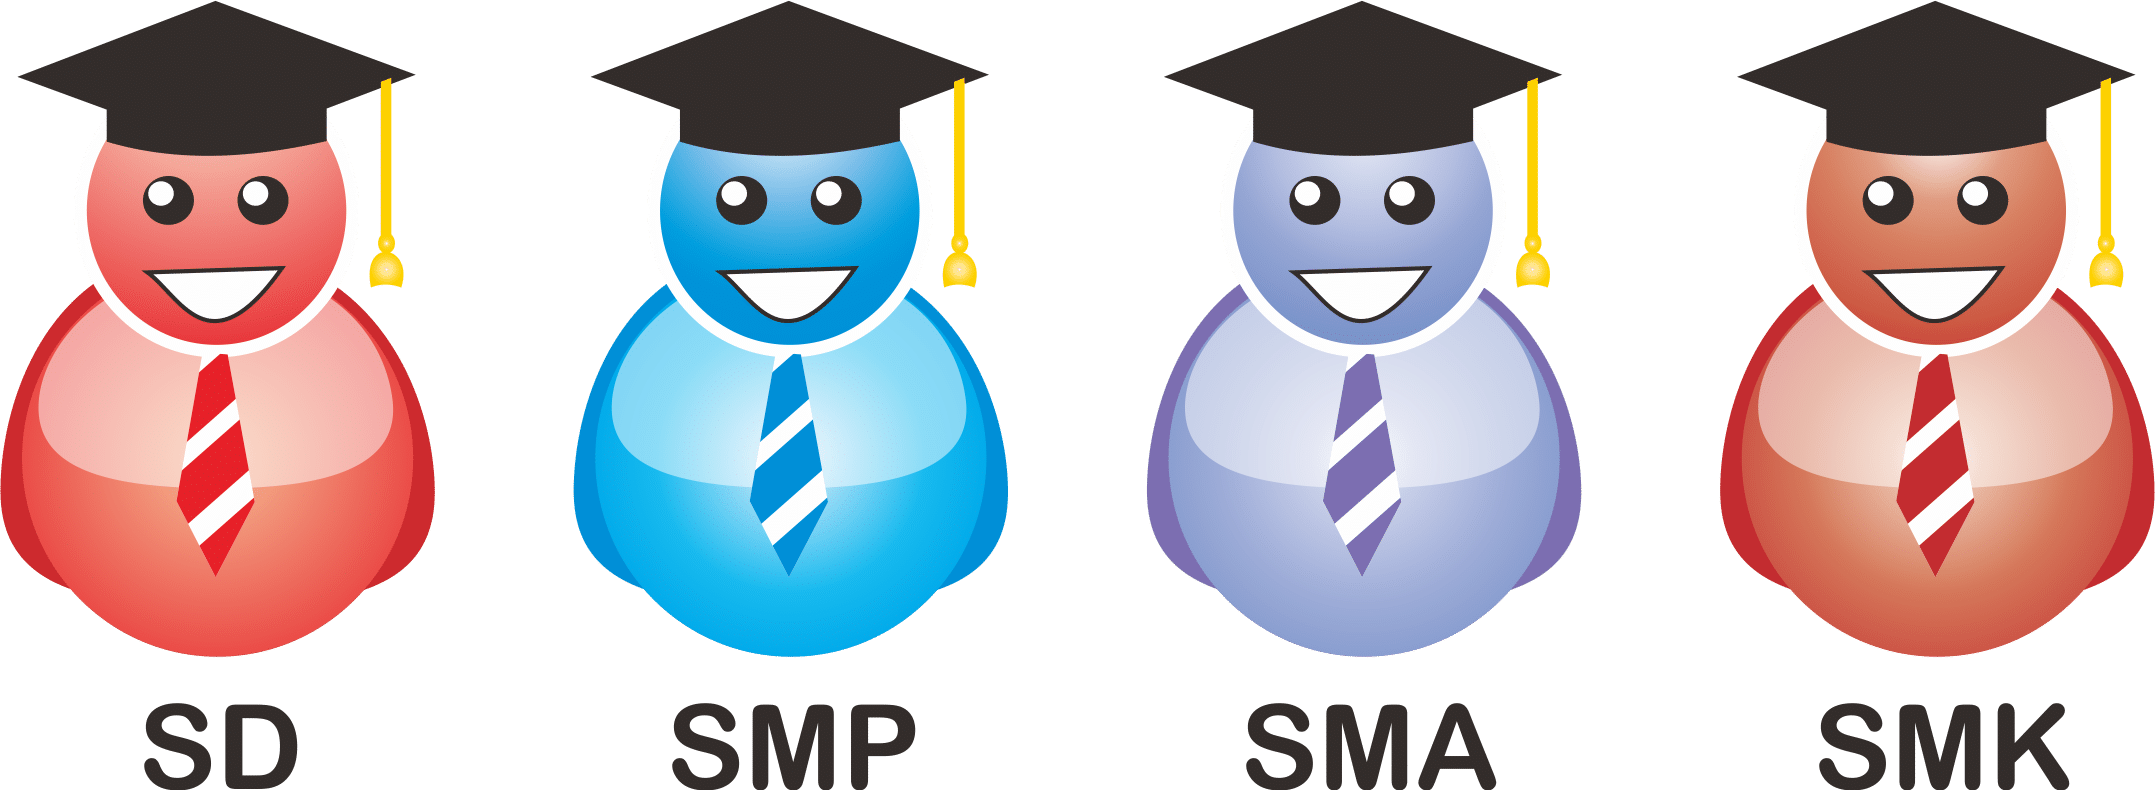 Student Icon : Ikon siswa SD, SMP, SMA, SMK | Adikiss.net